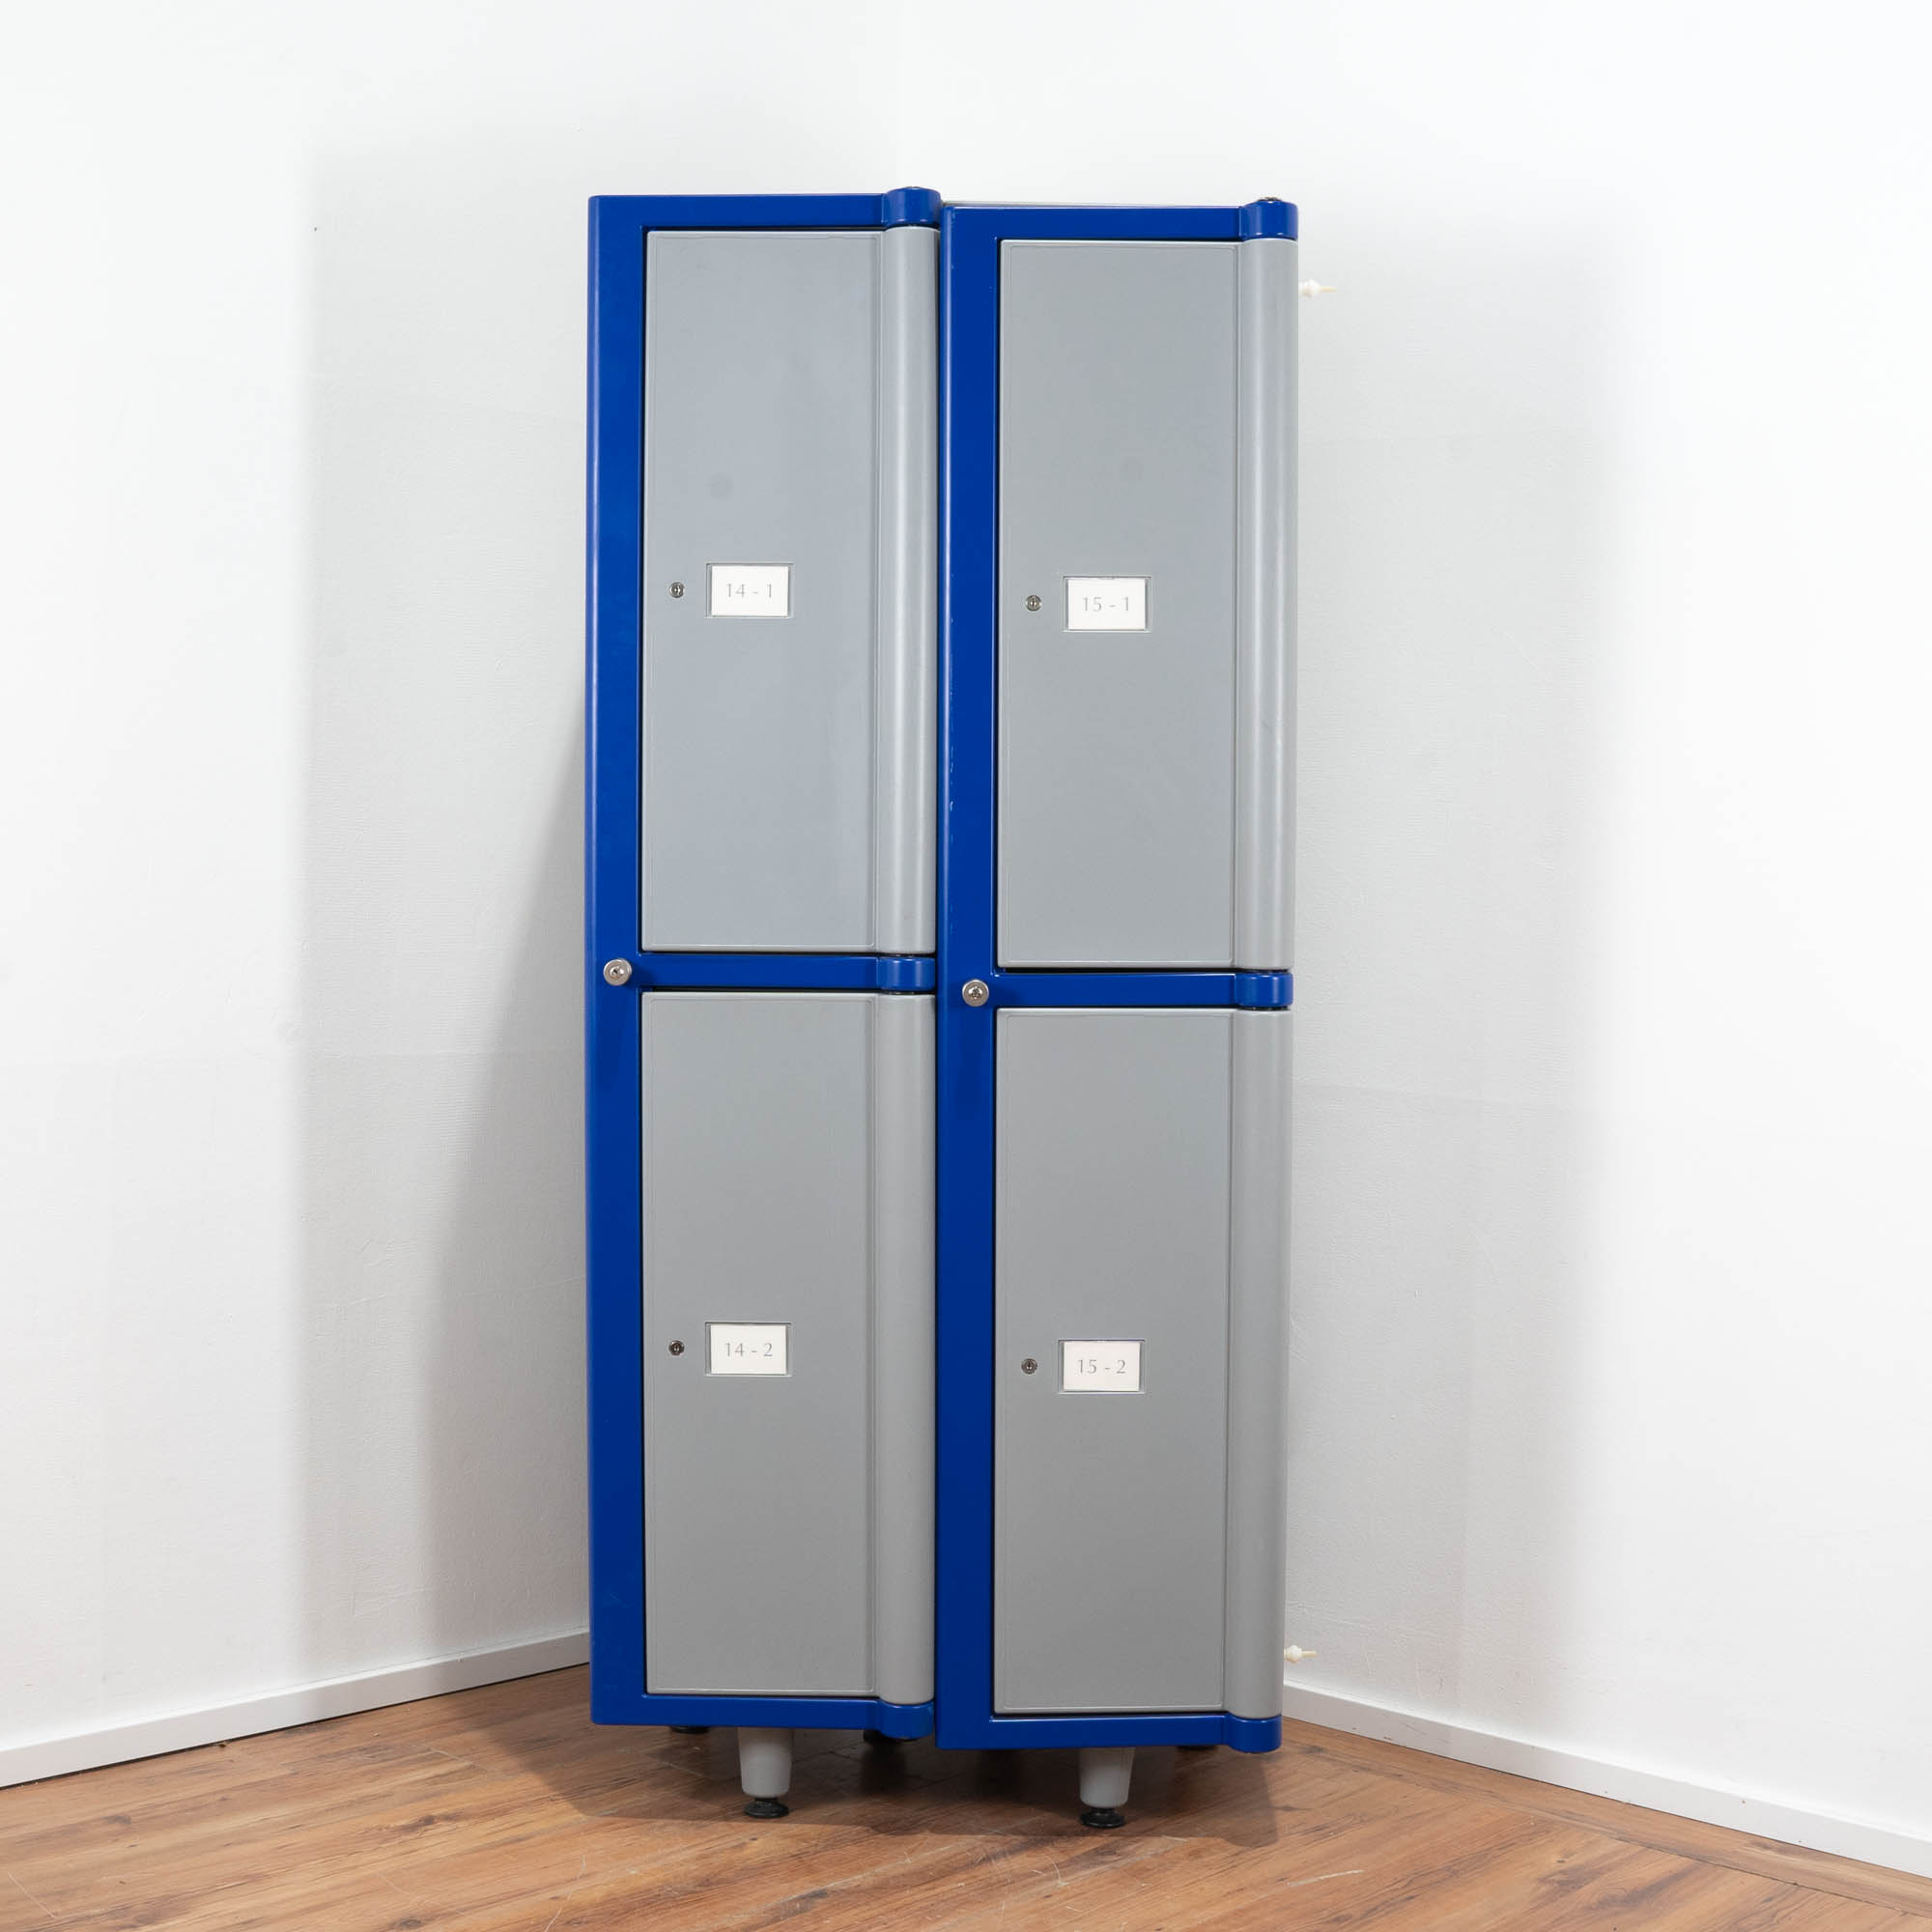 Kunststoff Garderobe grau-blau - 4 Fächer - 6 einstellbare Bodenstützen